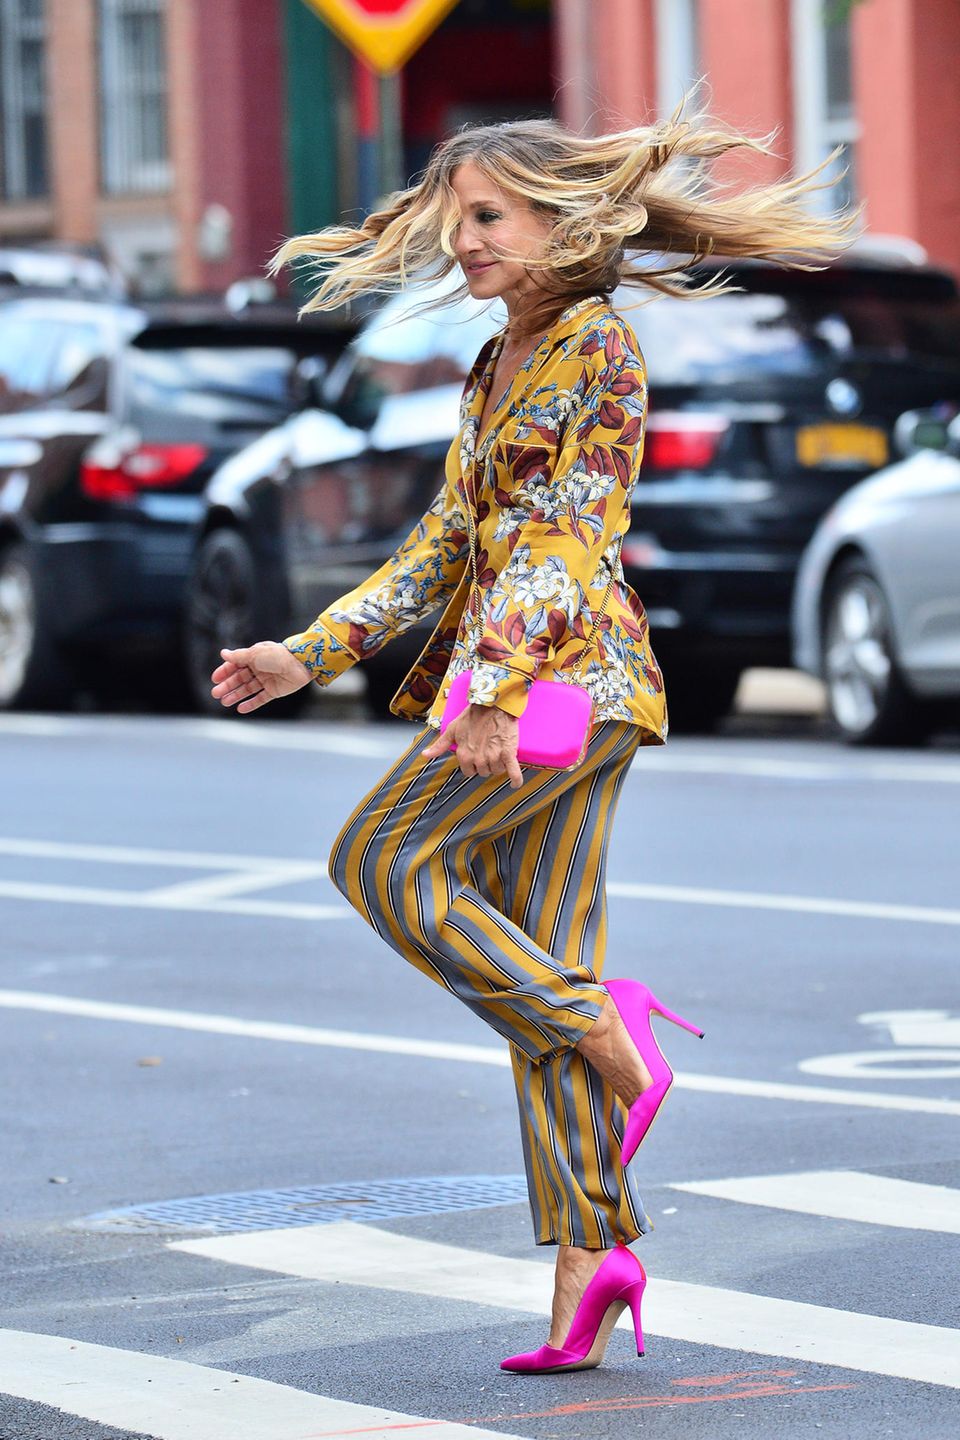 Die Schauspielerin dreht eine Pirouette und lässt dabei ihre Haare fliegen. Zum Mustermix im Pyjama-Stil von "Intimissimi" kombiniert Sarah Jessica Parker pinkfarbene Accessoires in Form einer Clutch und spitzen Pumps. Ein echter Hingucker! 